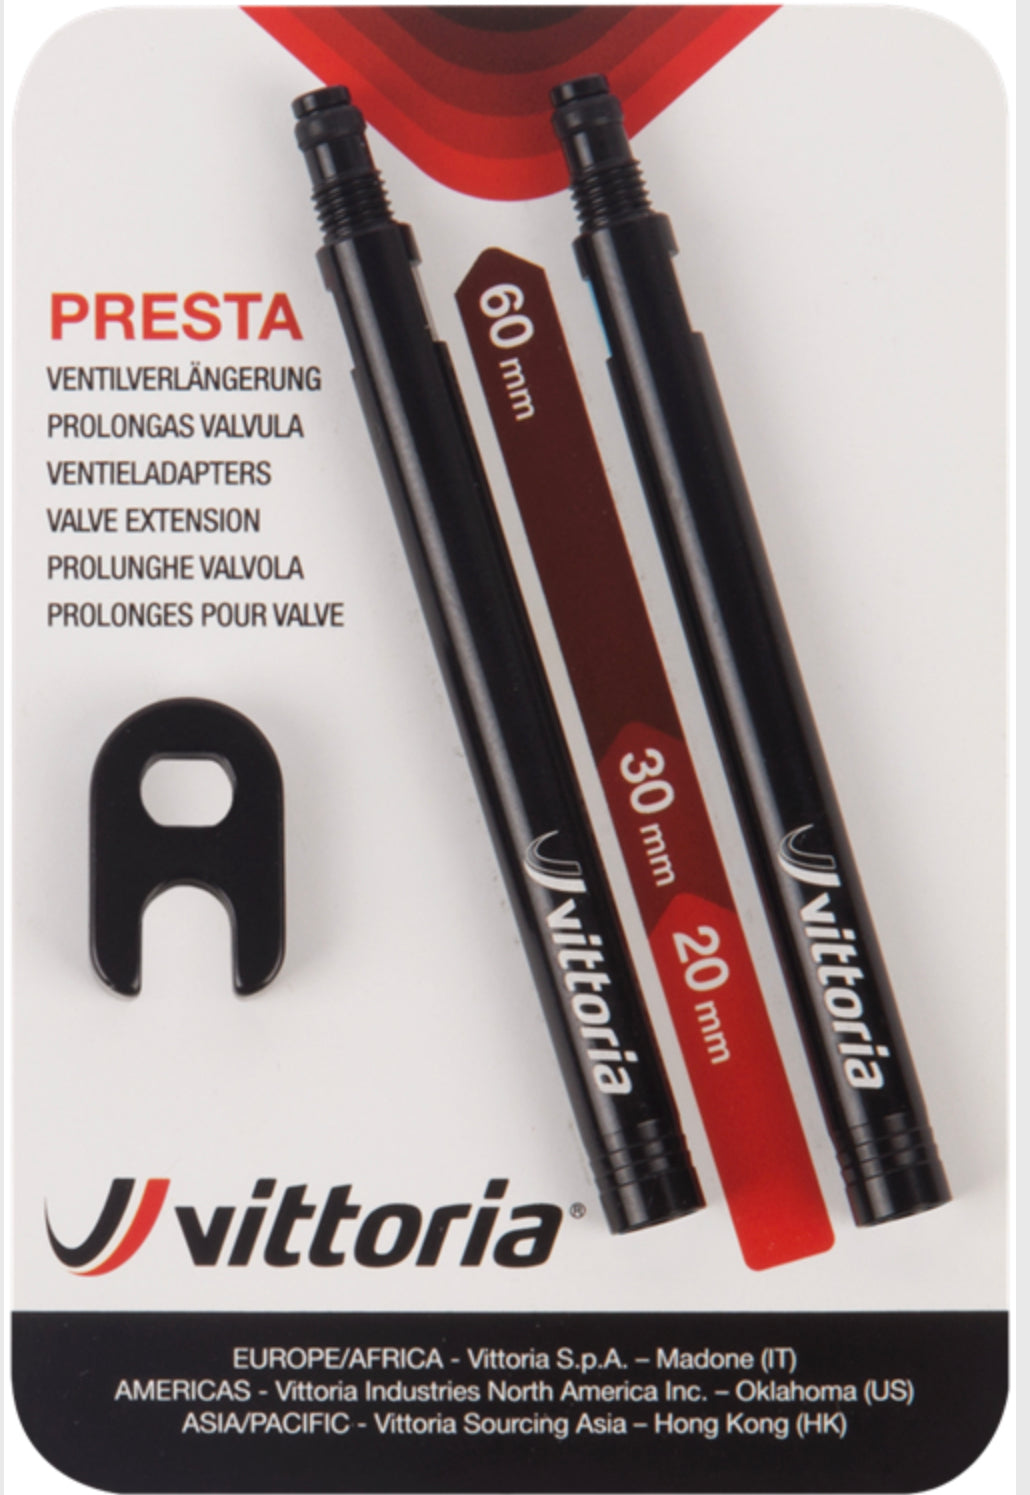 Vittoria valve extensions